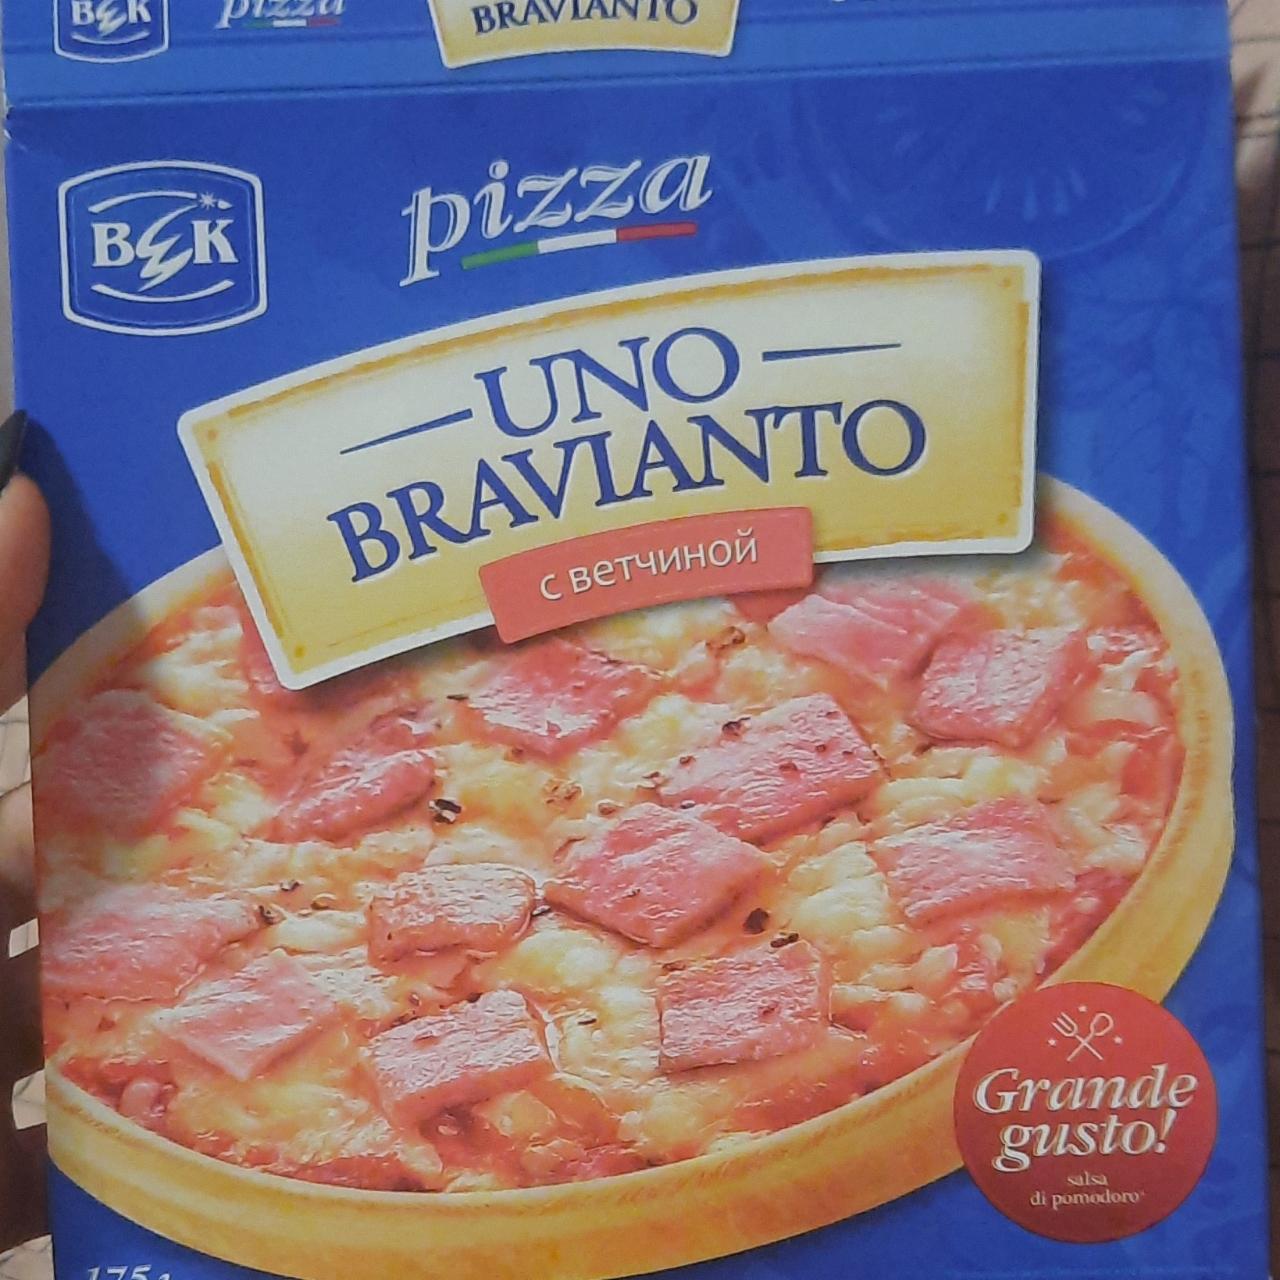 Фото - Пицца с ветчиной UNO BRAVIANTO ВЕК